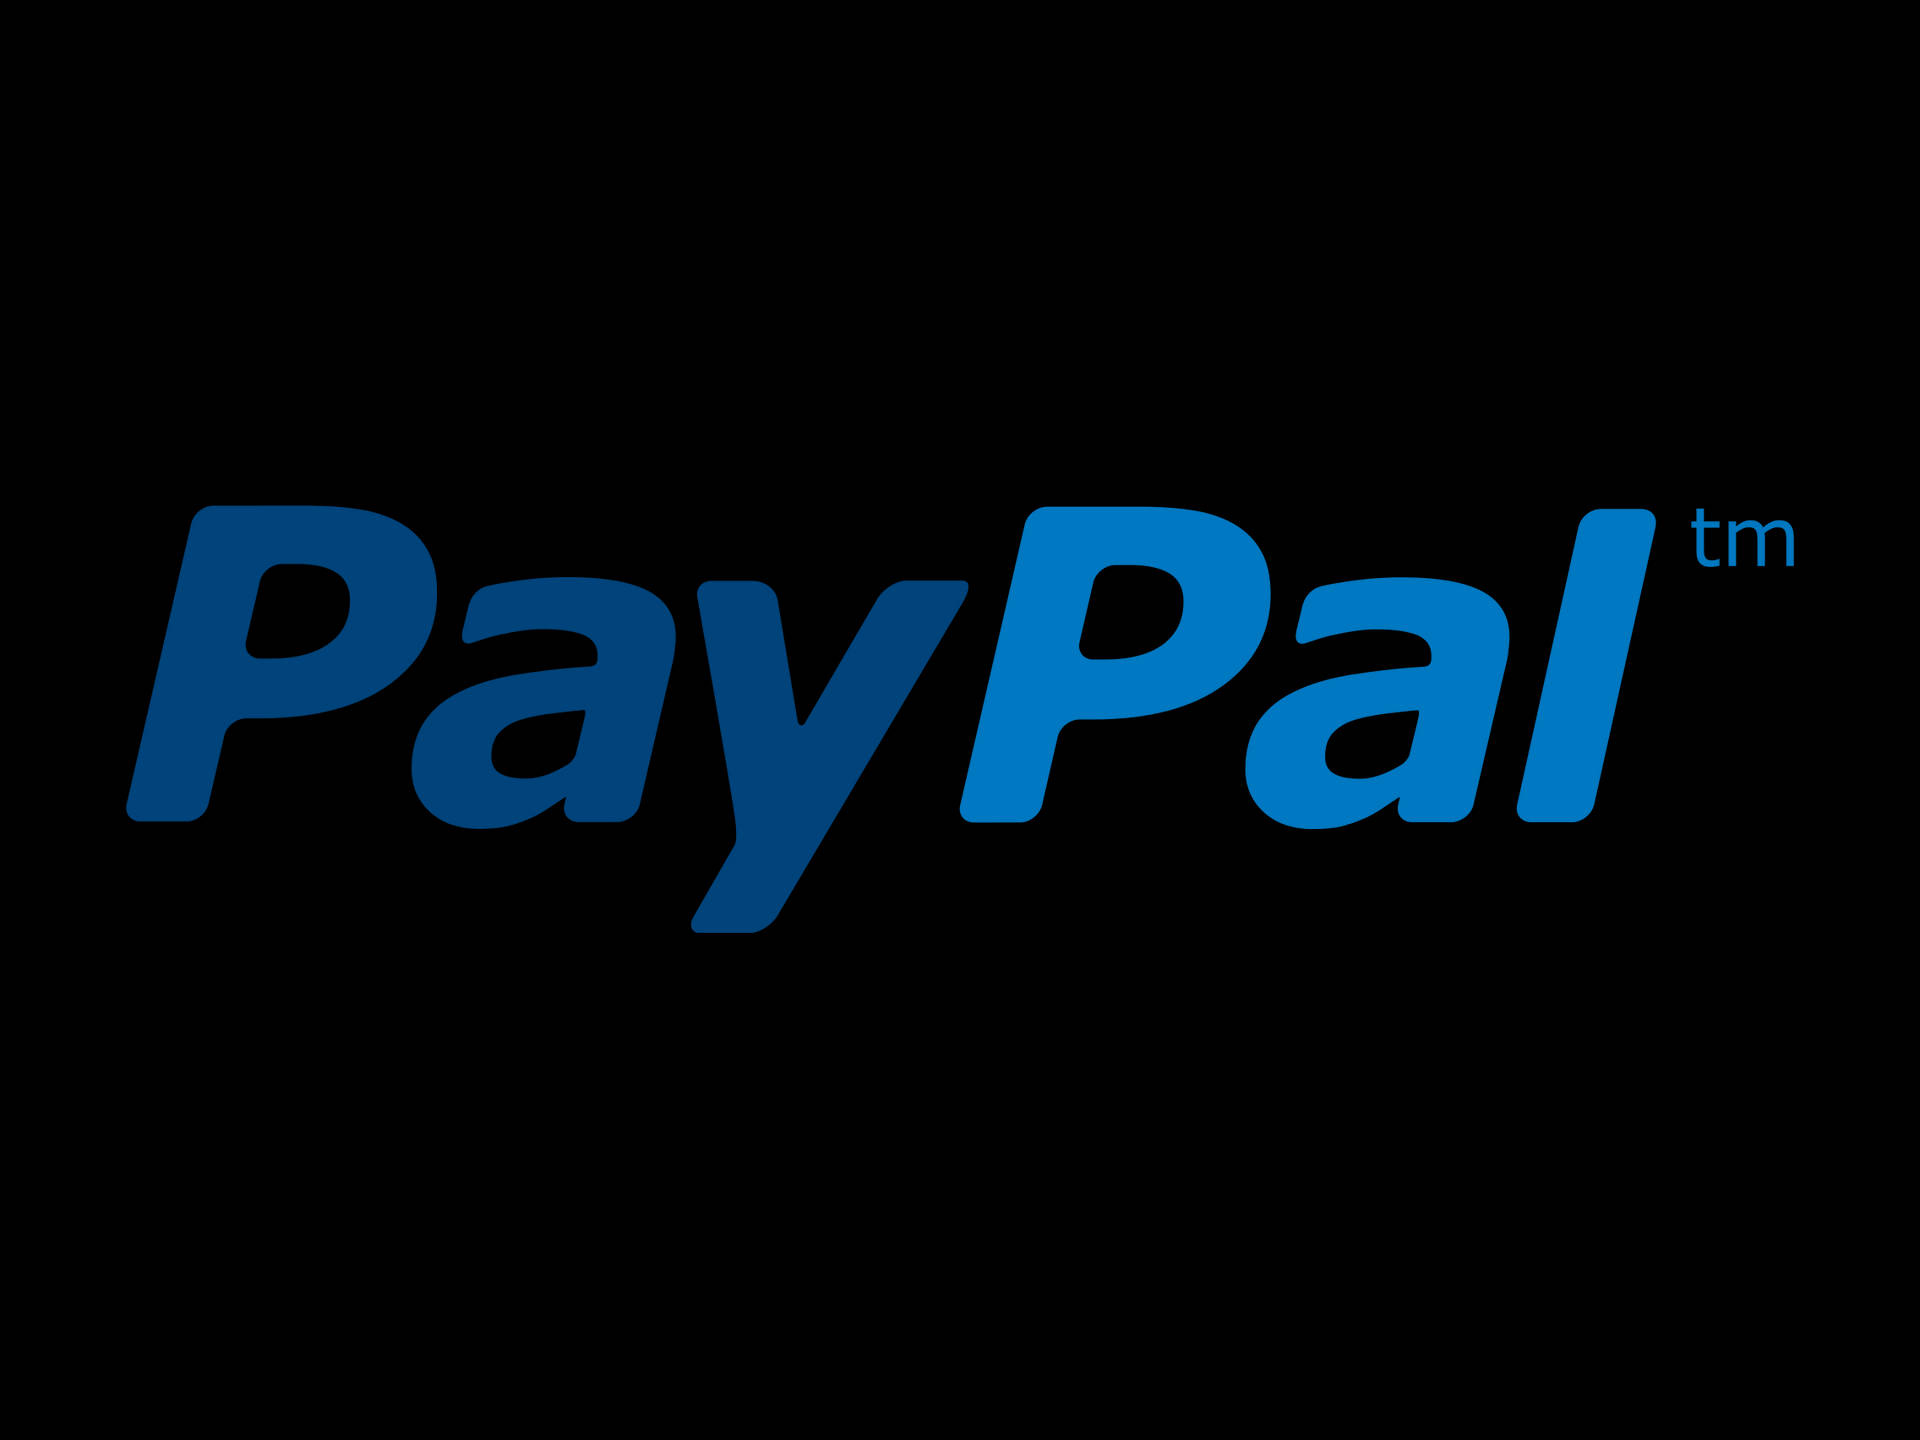 Paypal 2012 Logo Design